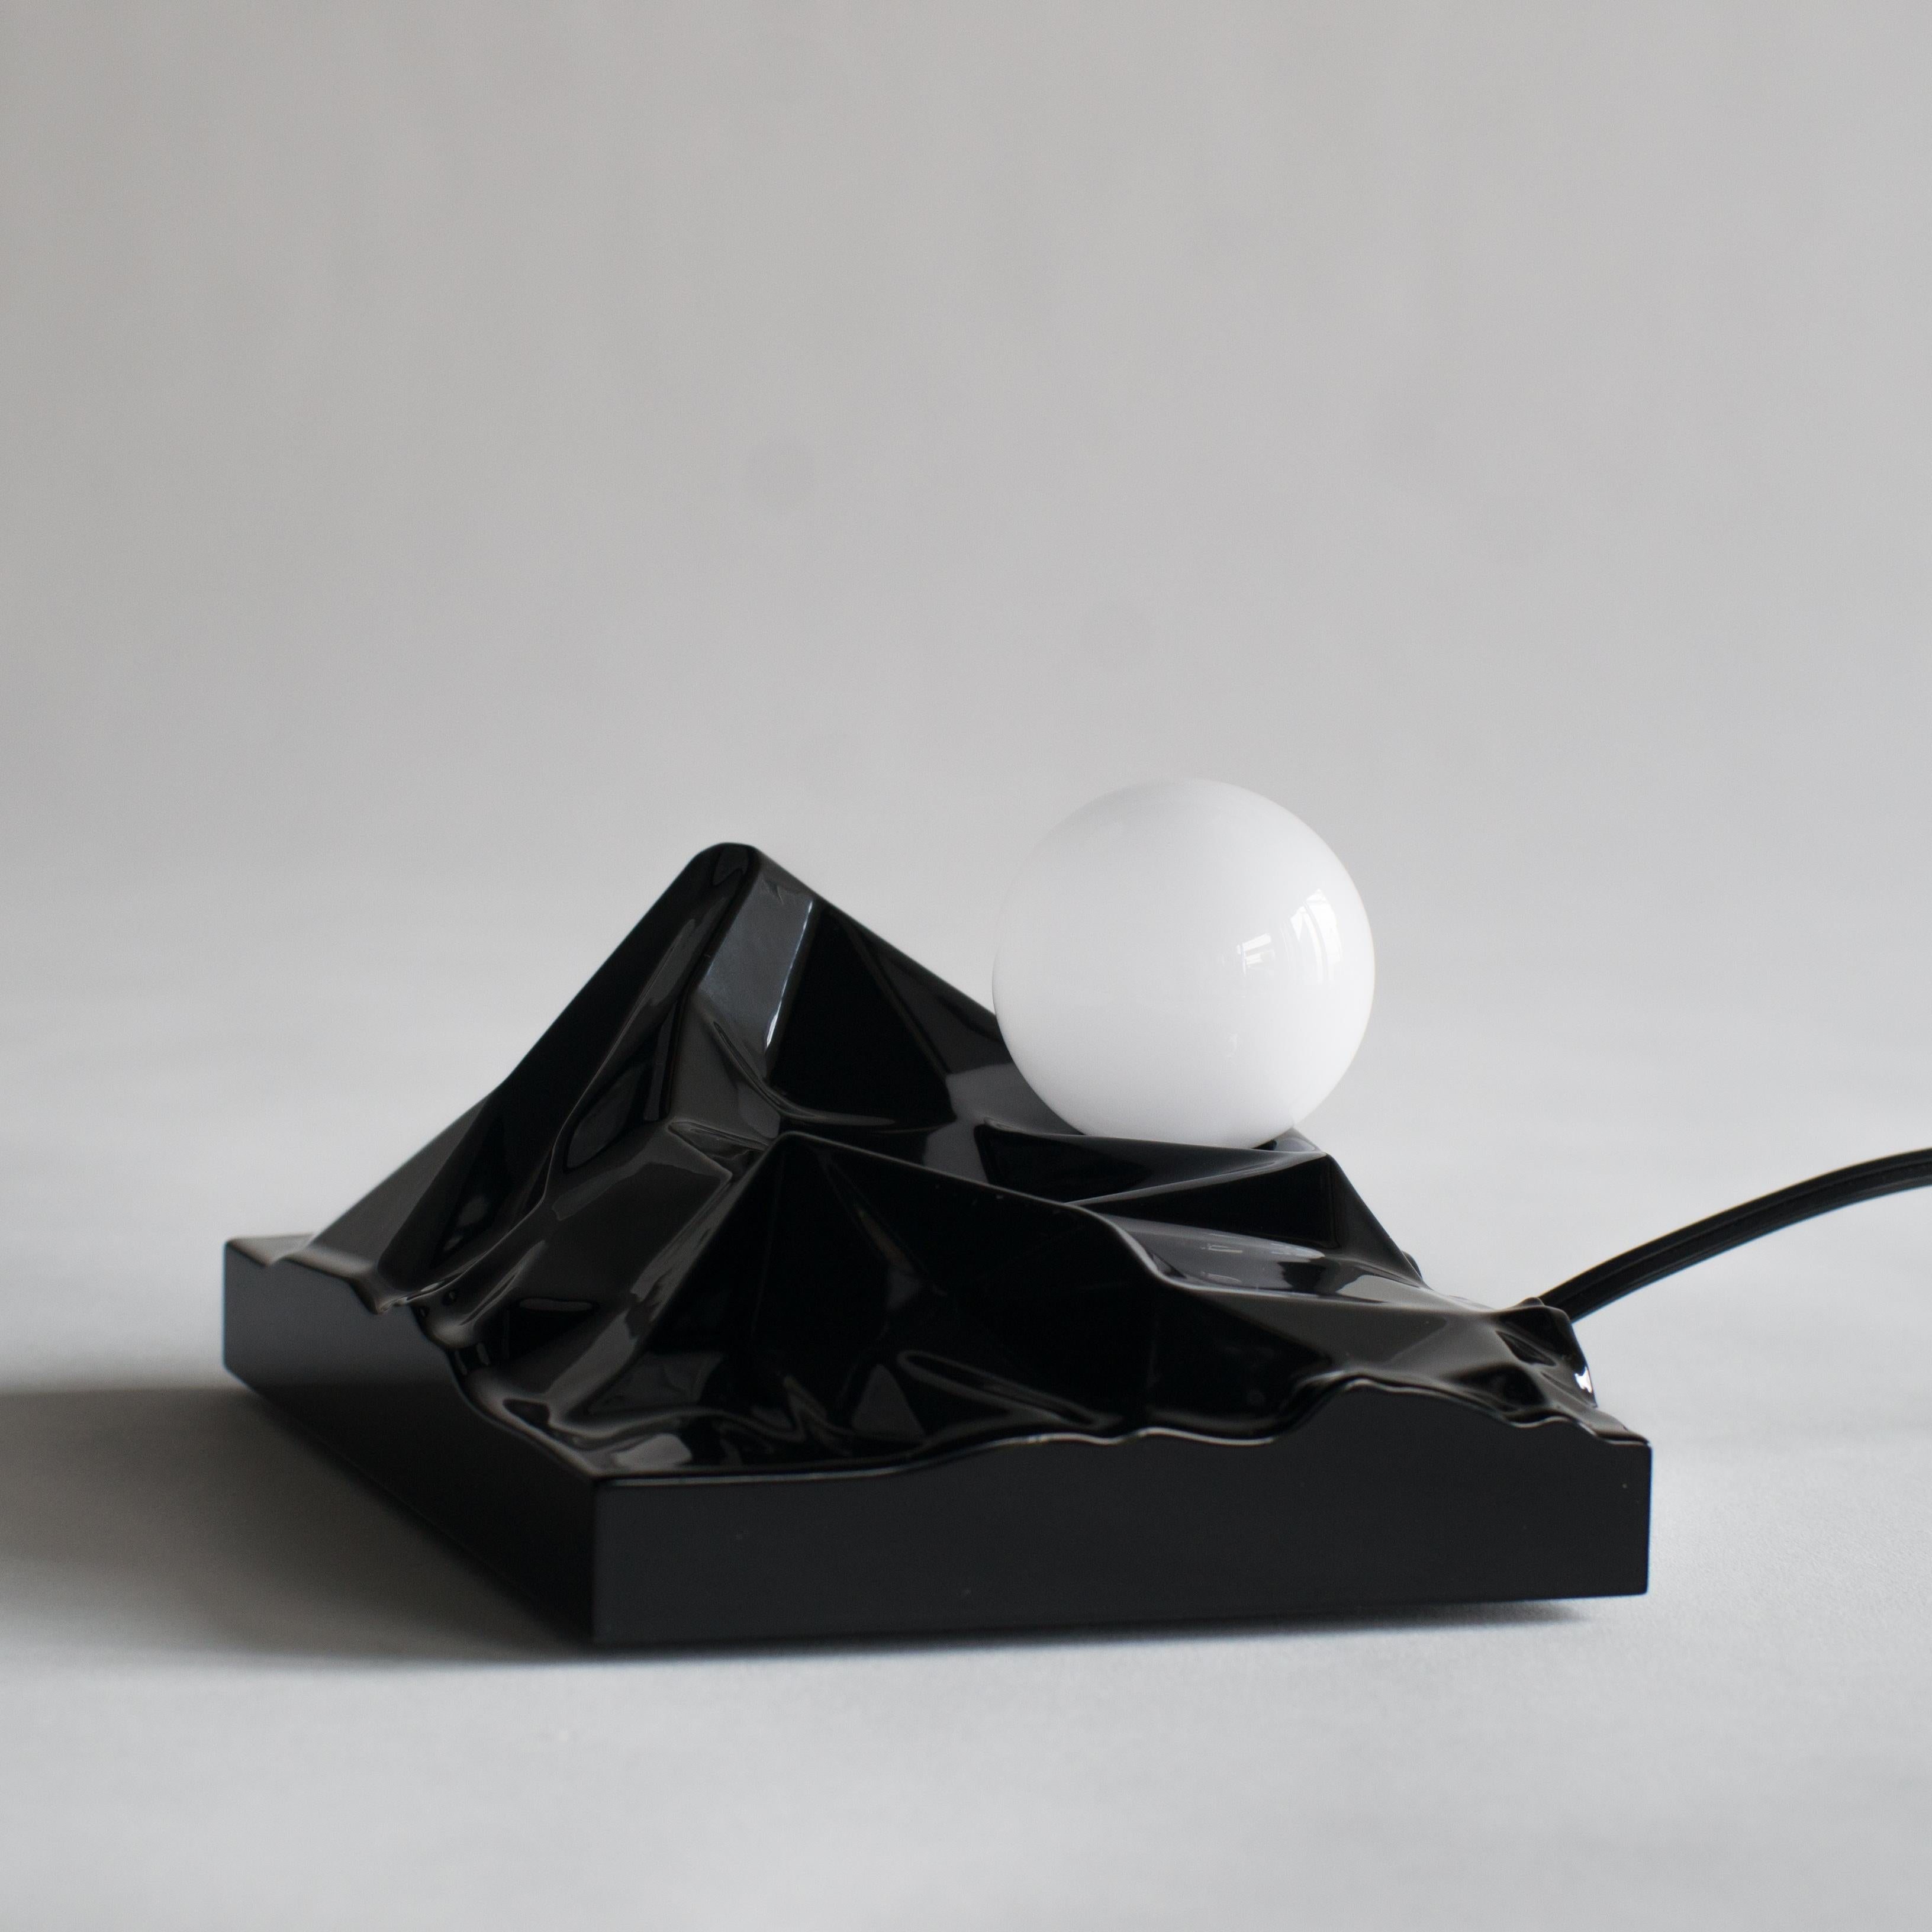 Wood Sunrising Lamp Satoshi Itasaka Urushi Object Contemporary Zen Japanese